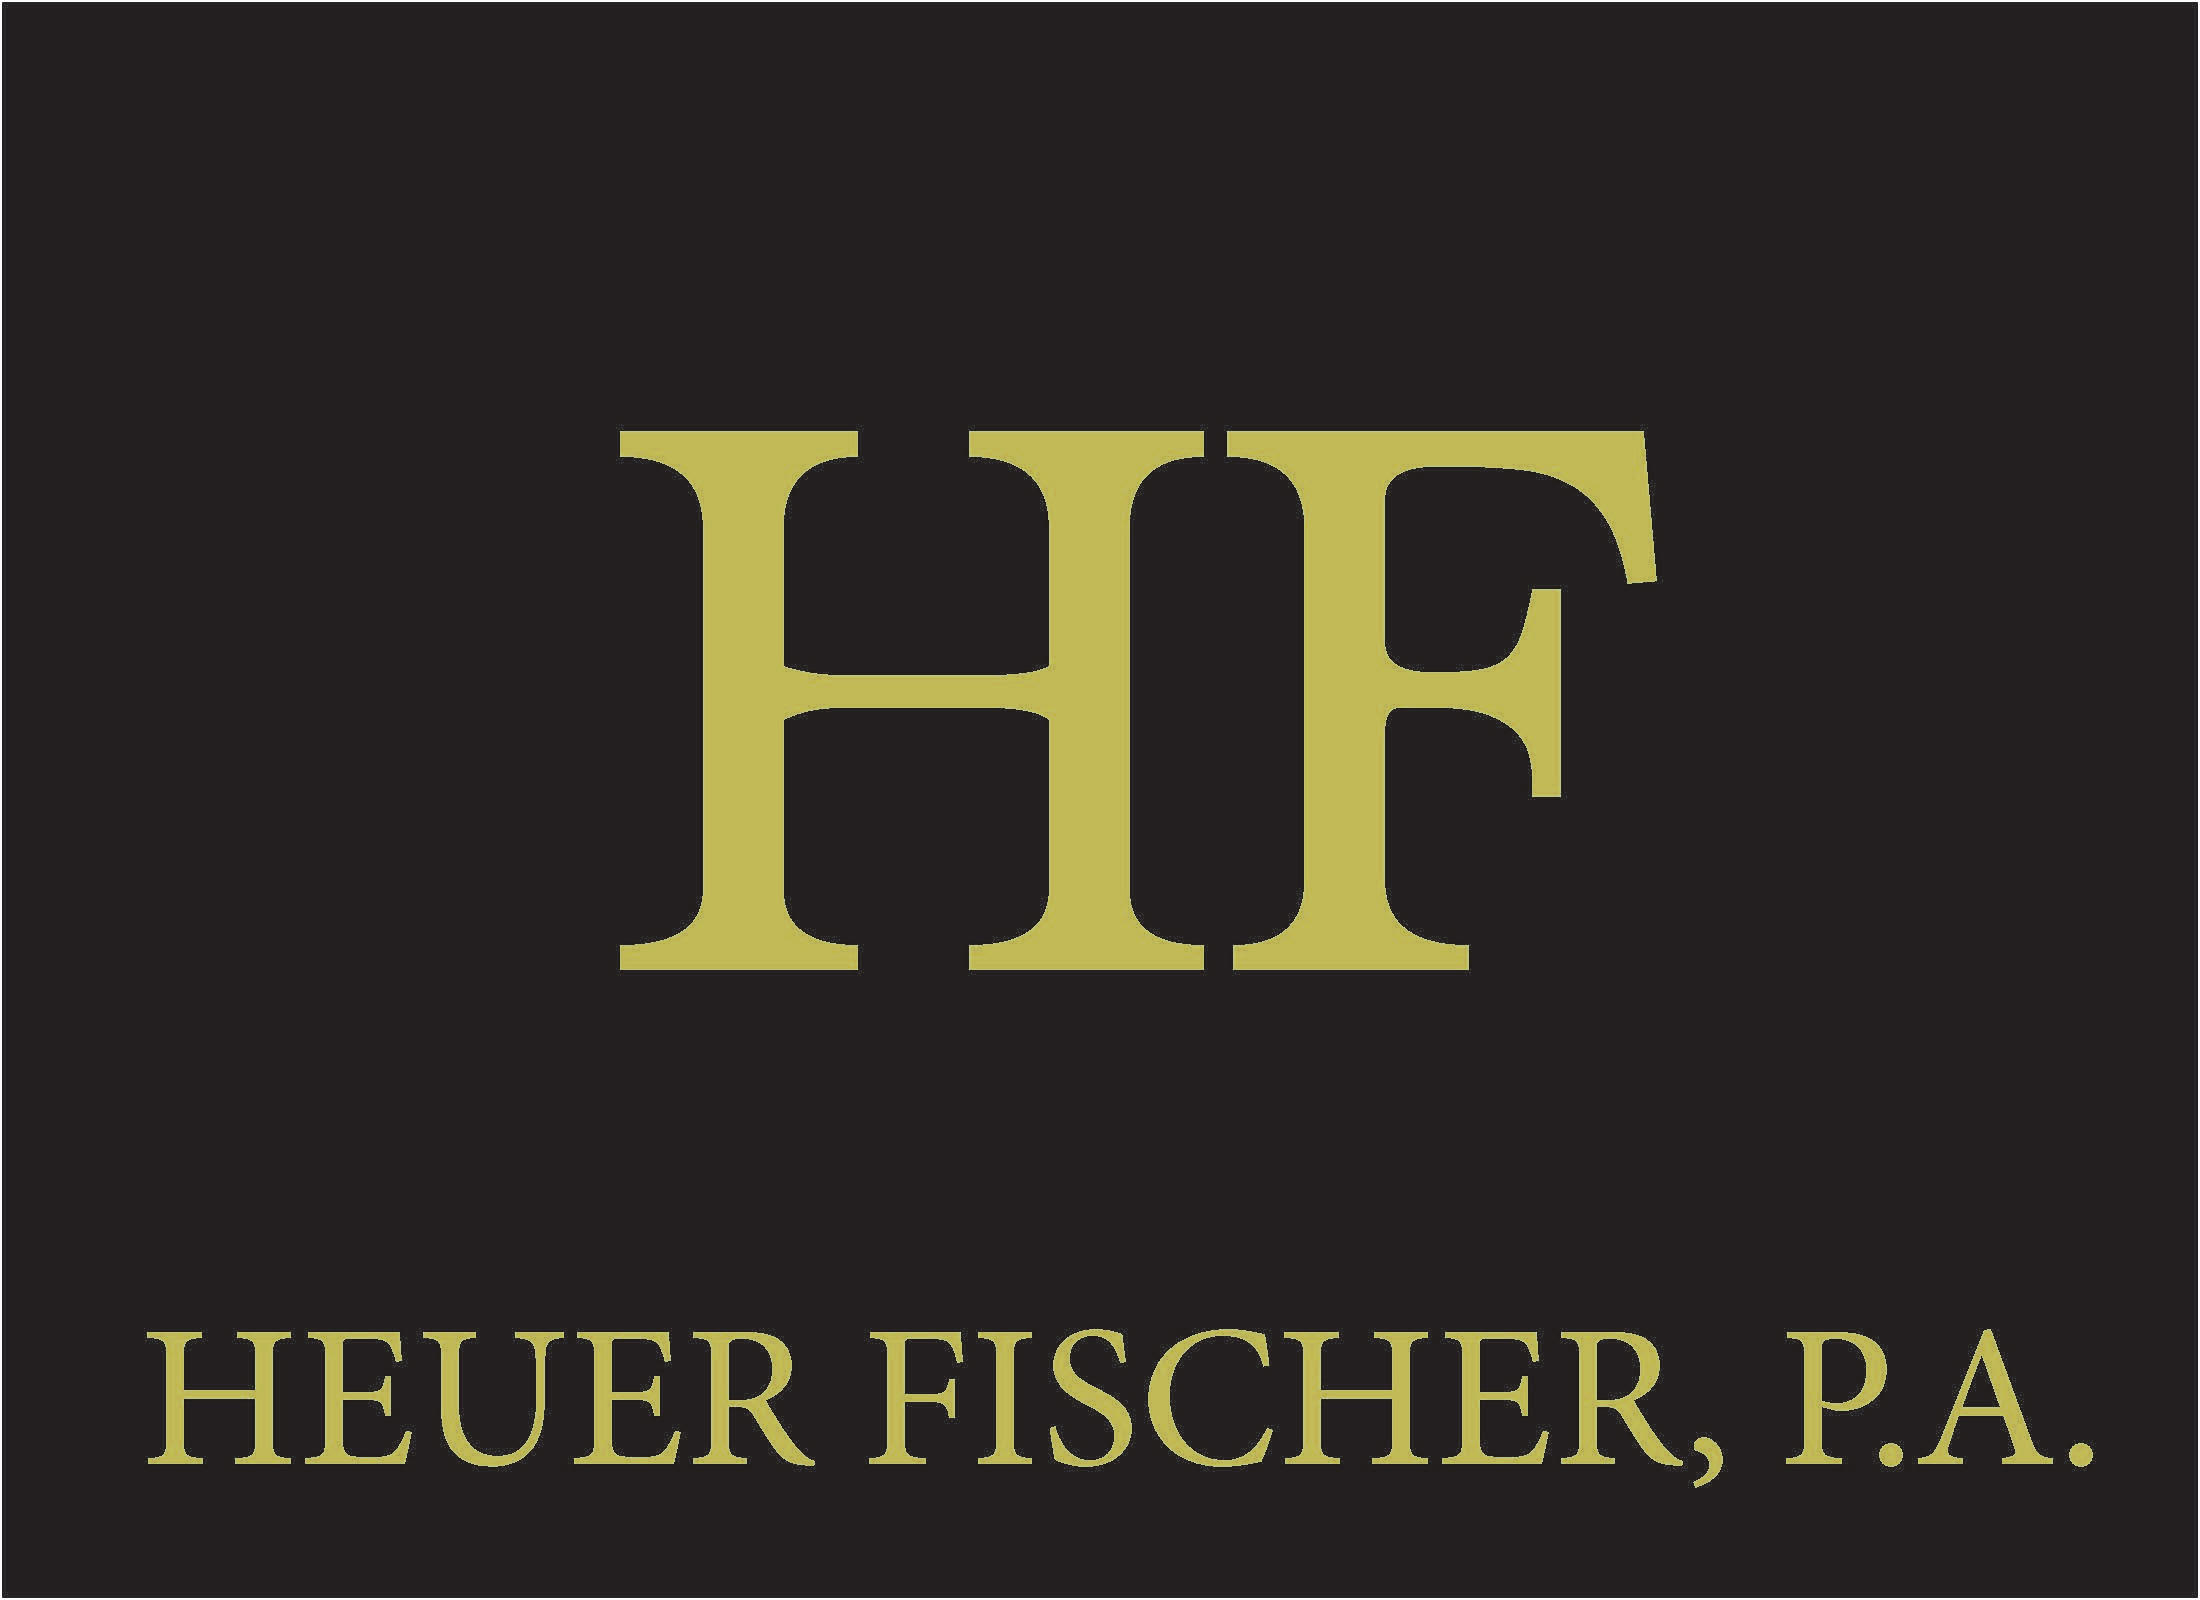 Heuer Fischer P.A. logo